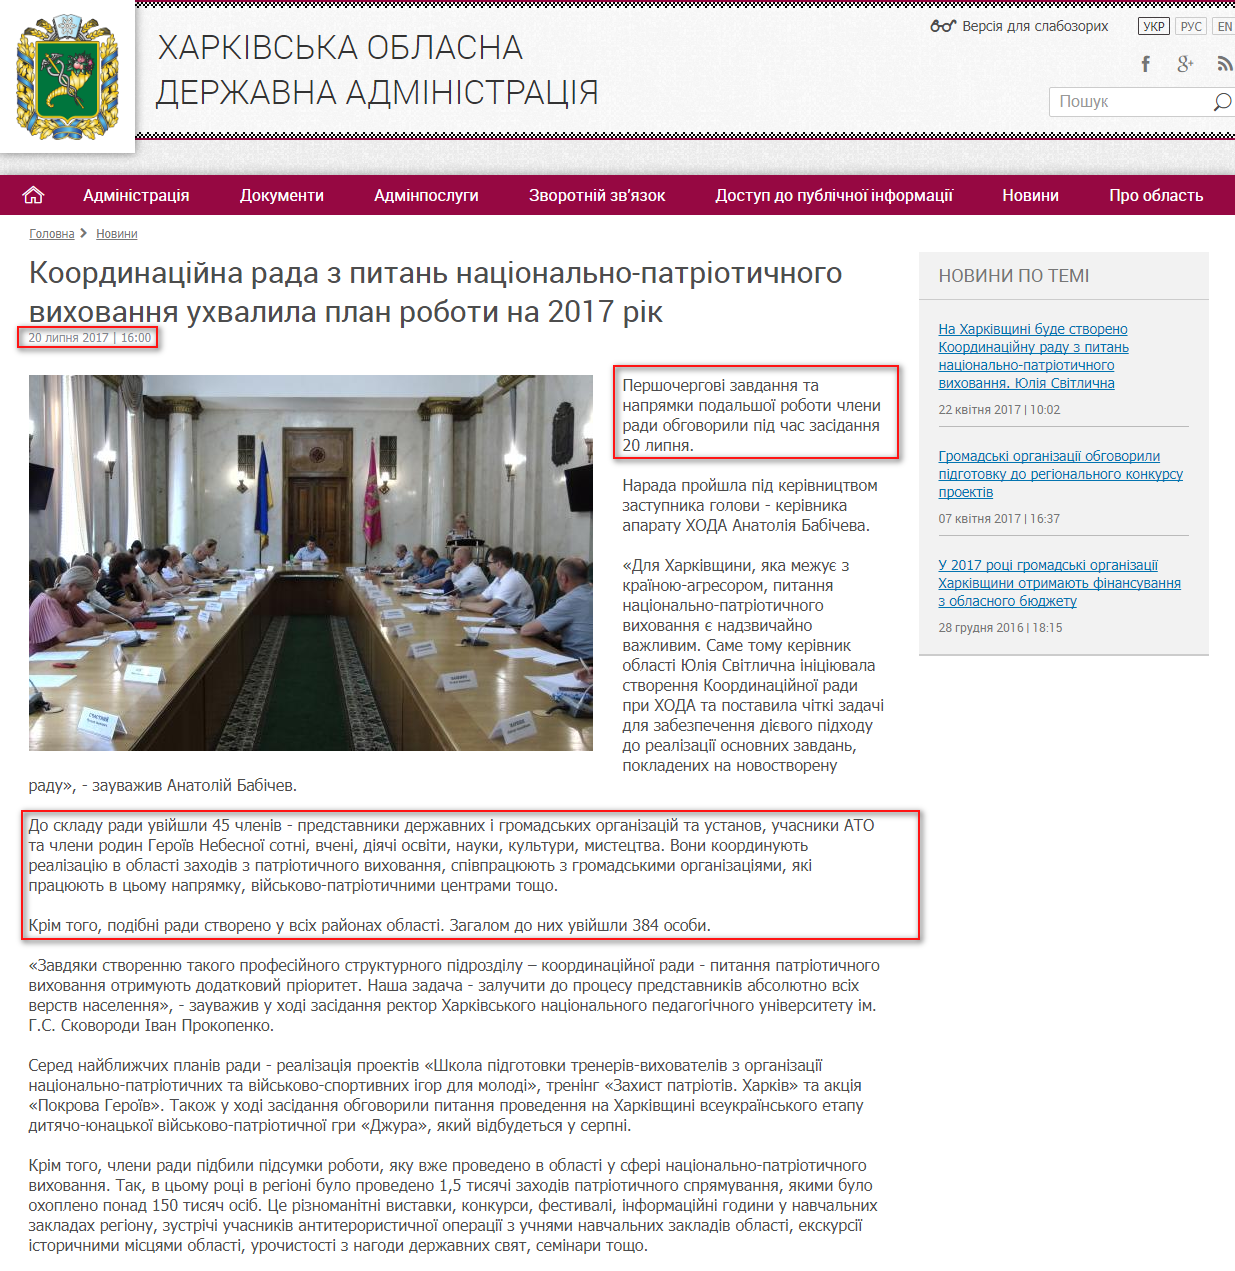 http://kharkivoda.gov.ua/news/87660